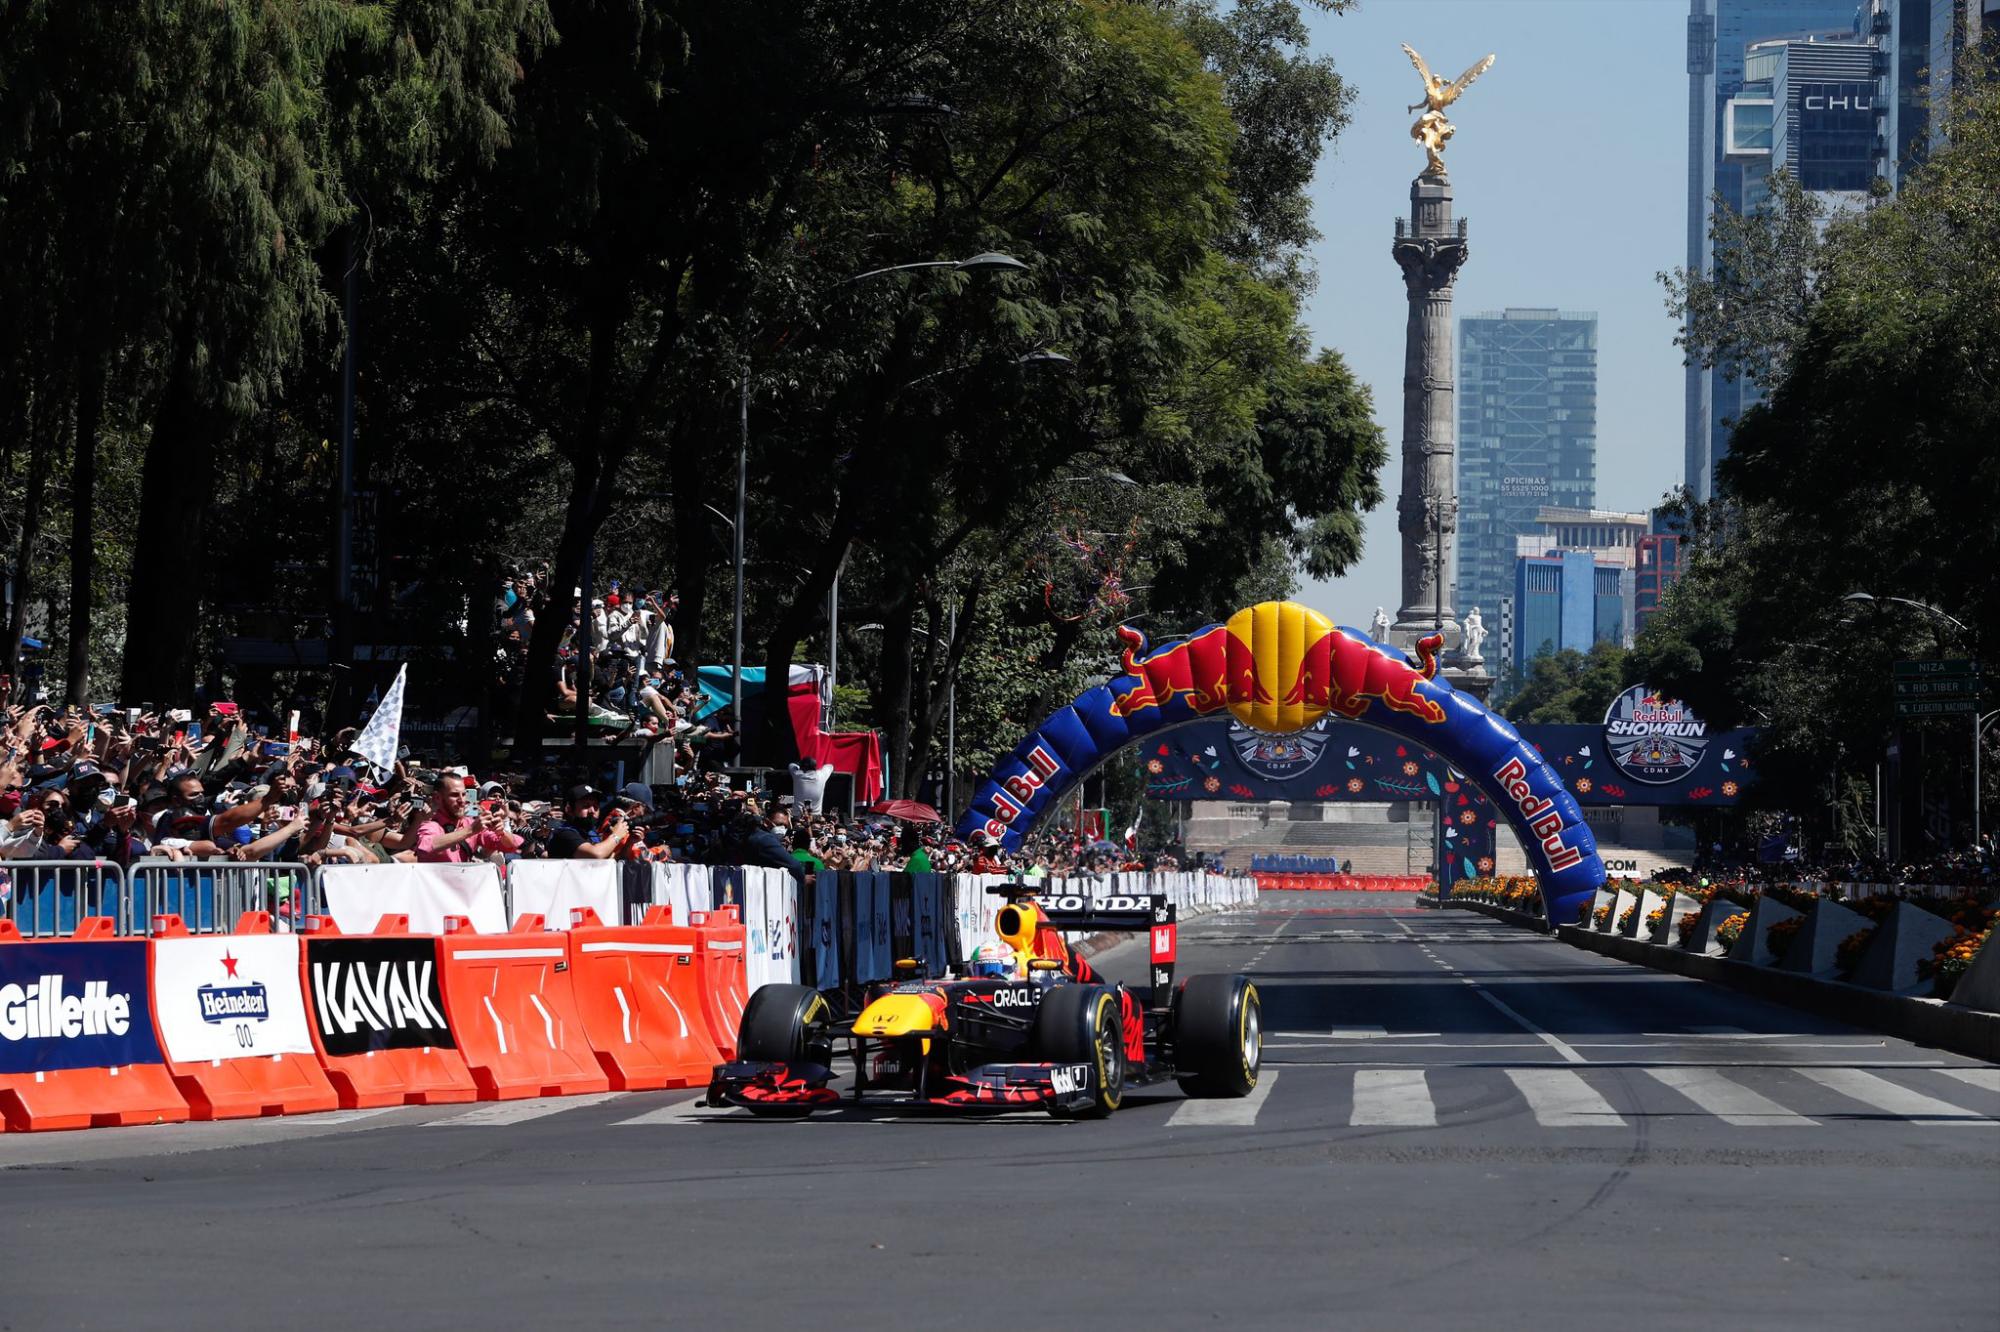 $!Todos en Red Bull quieren que gane en México, dice Checo Pérez